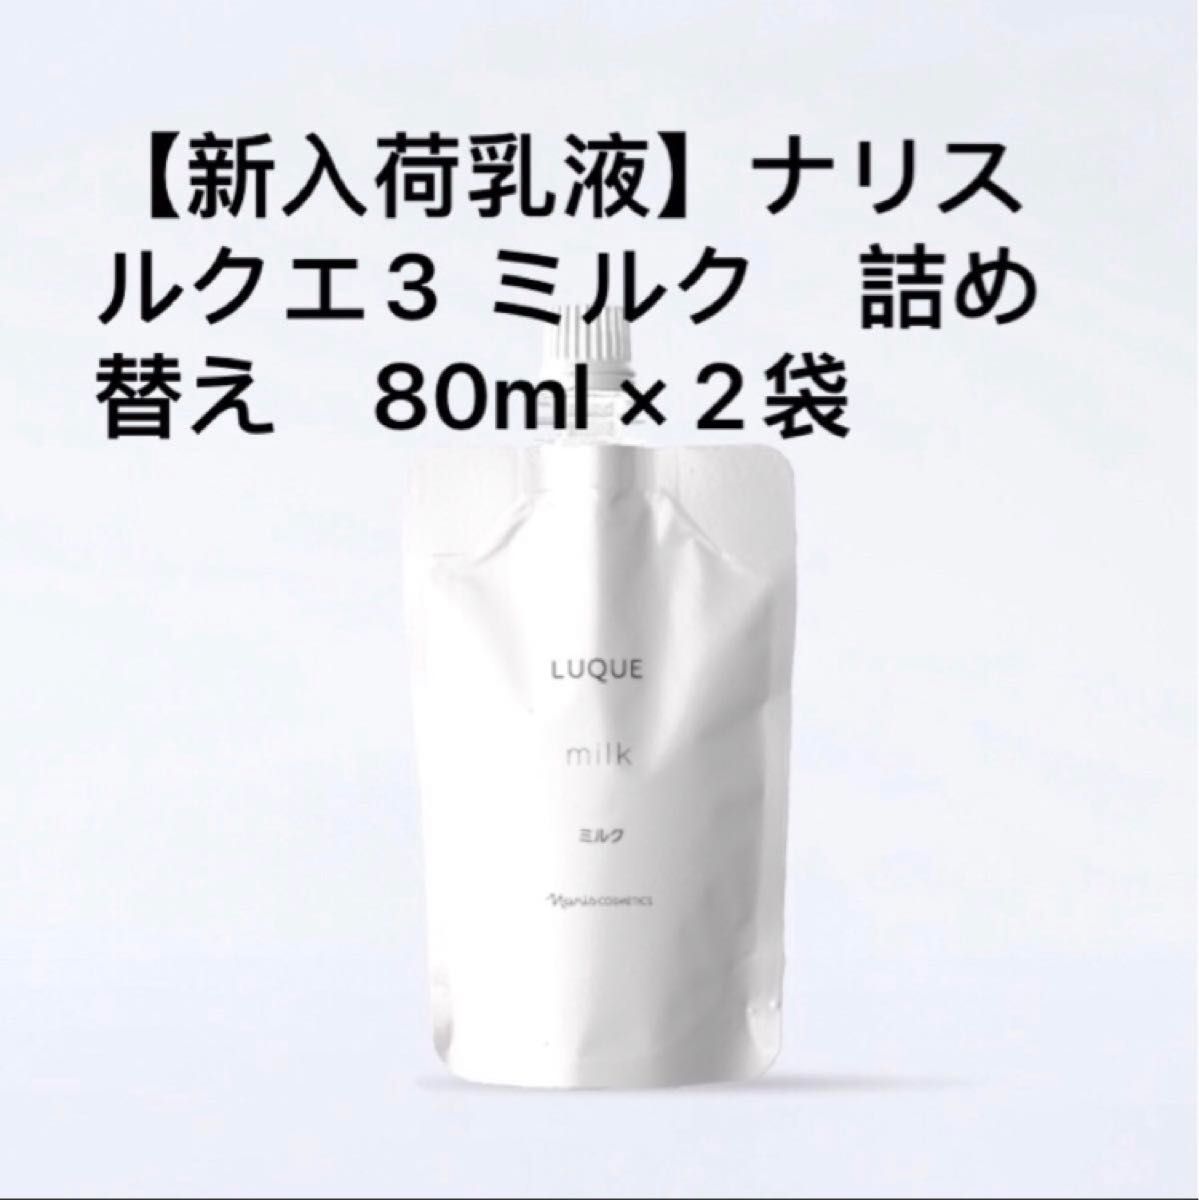 ナリス ルクエ3 ミルク 詰め替え 80ml × 2袋 - 基礎化粧品